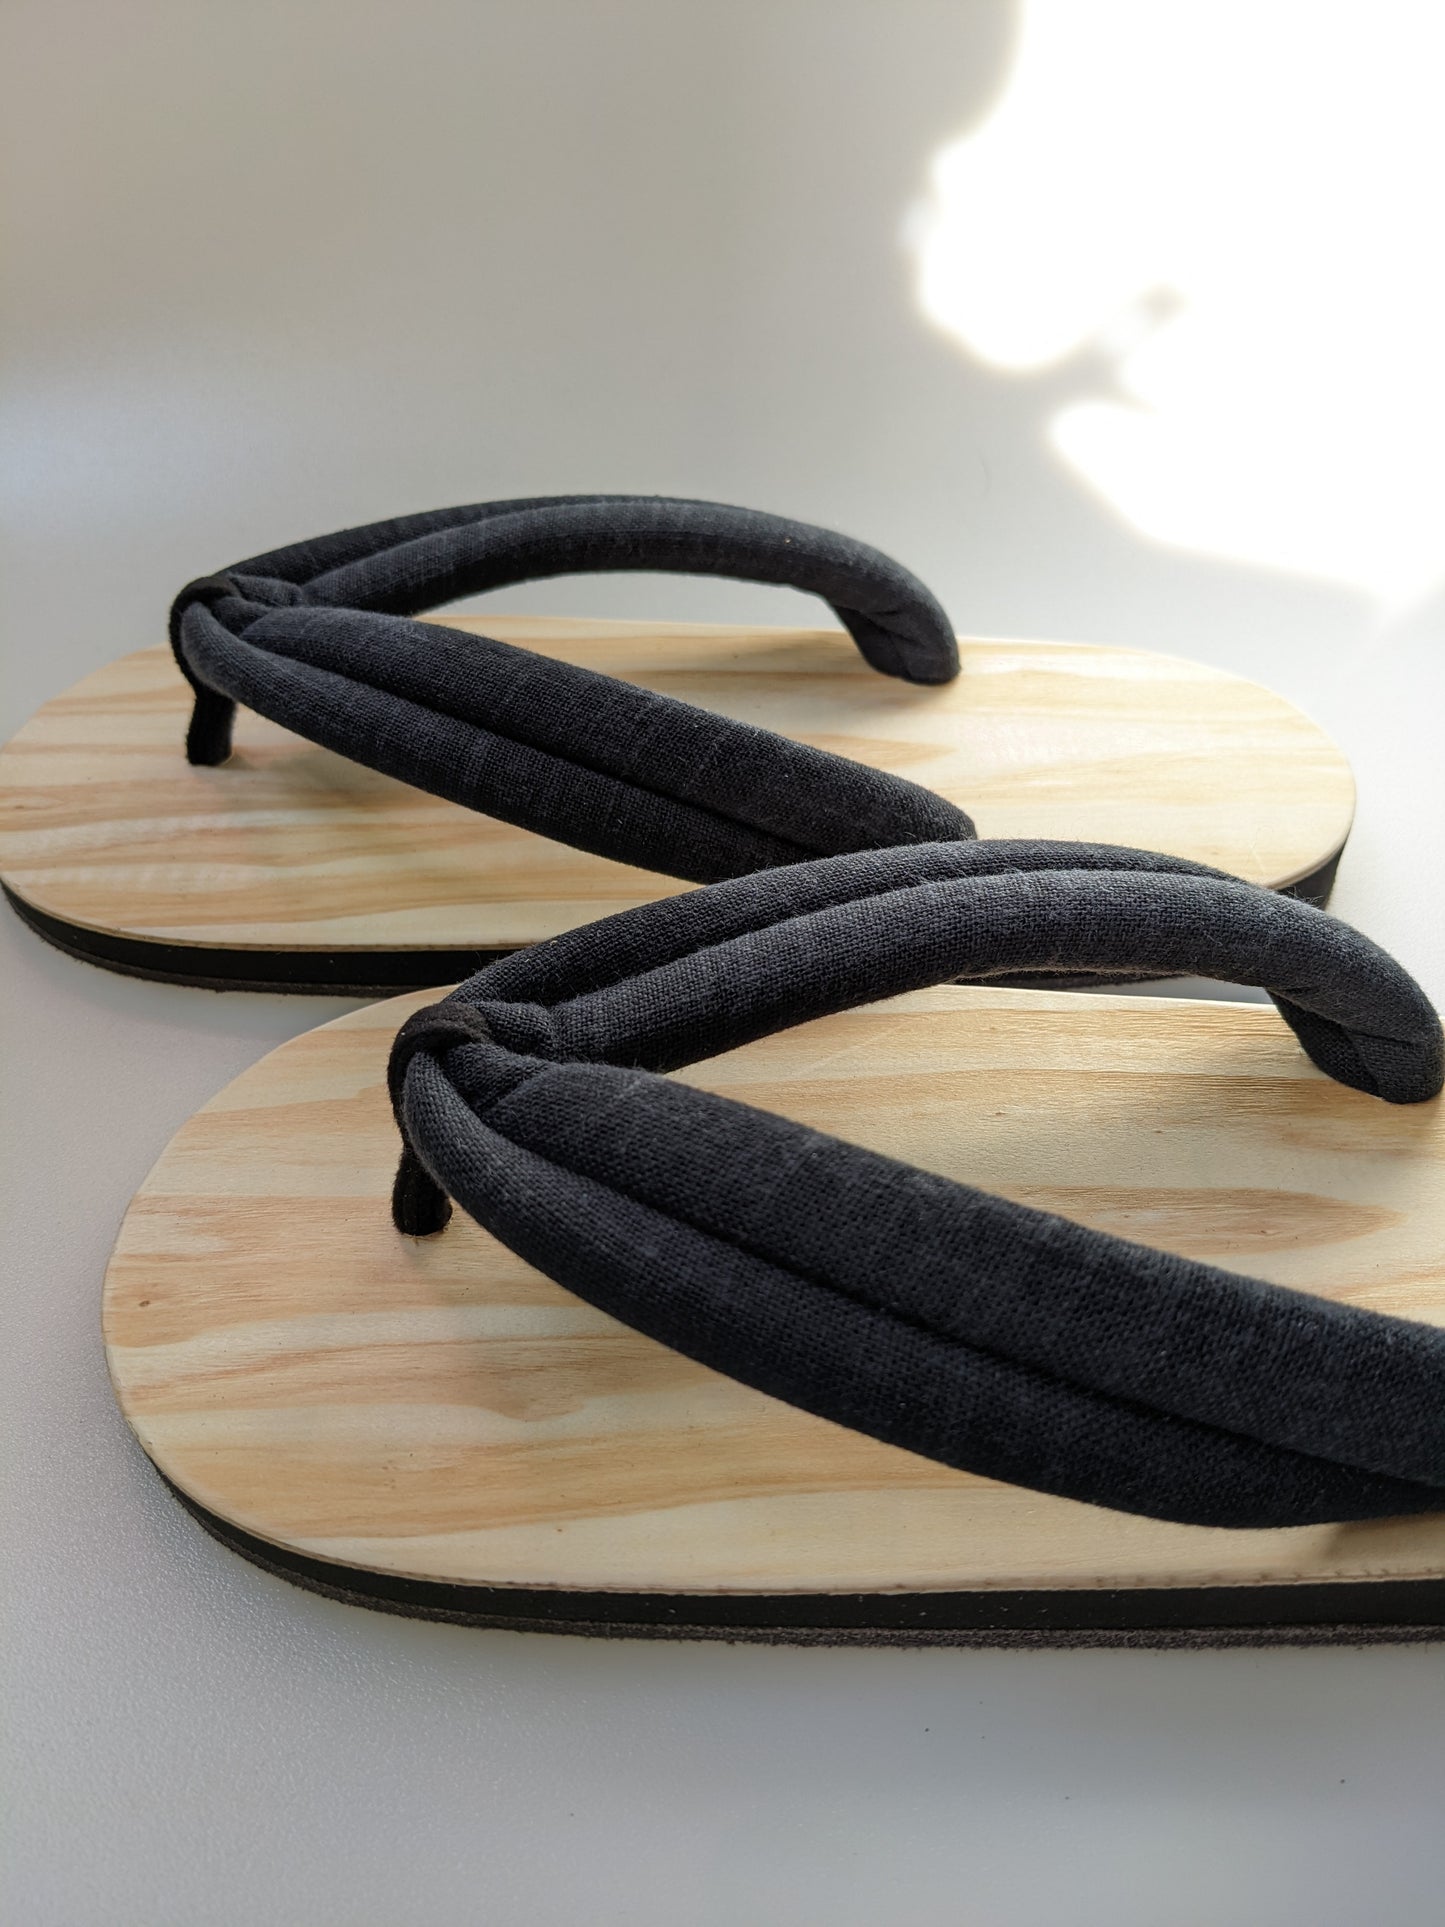 Wood summer Indoor slippers Geta Japanese Slippers YORU